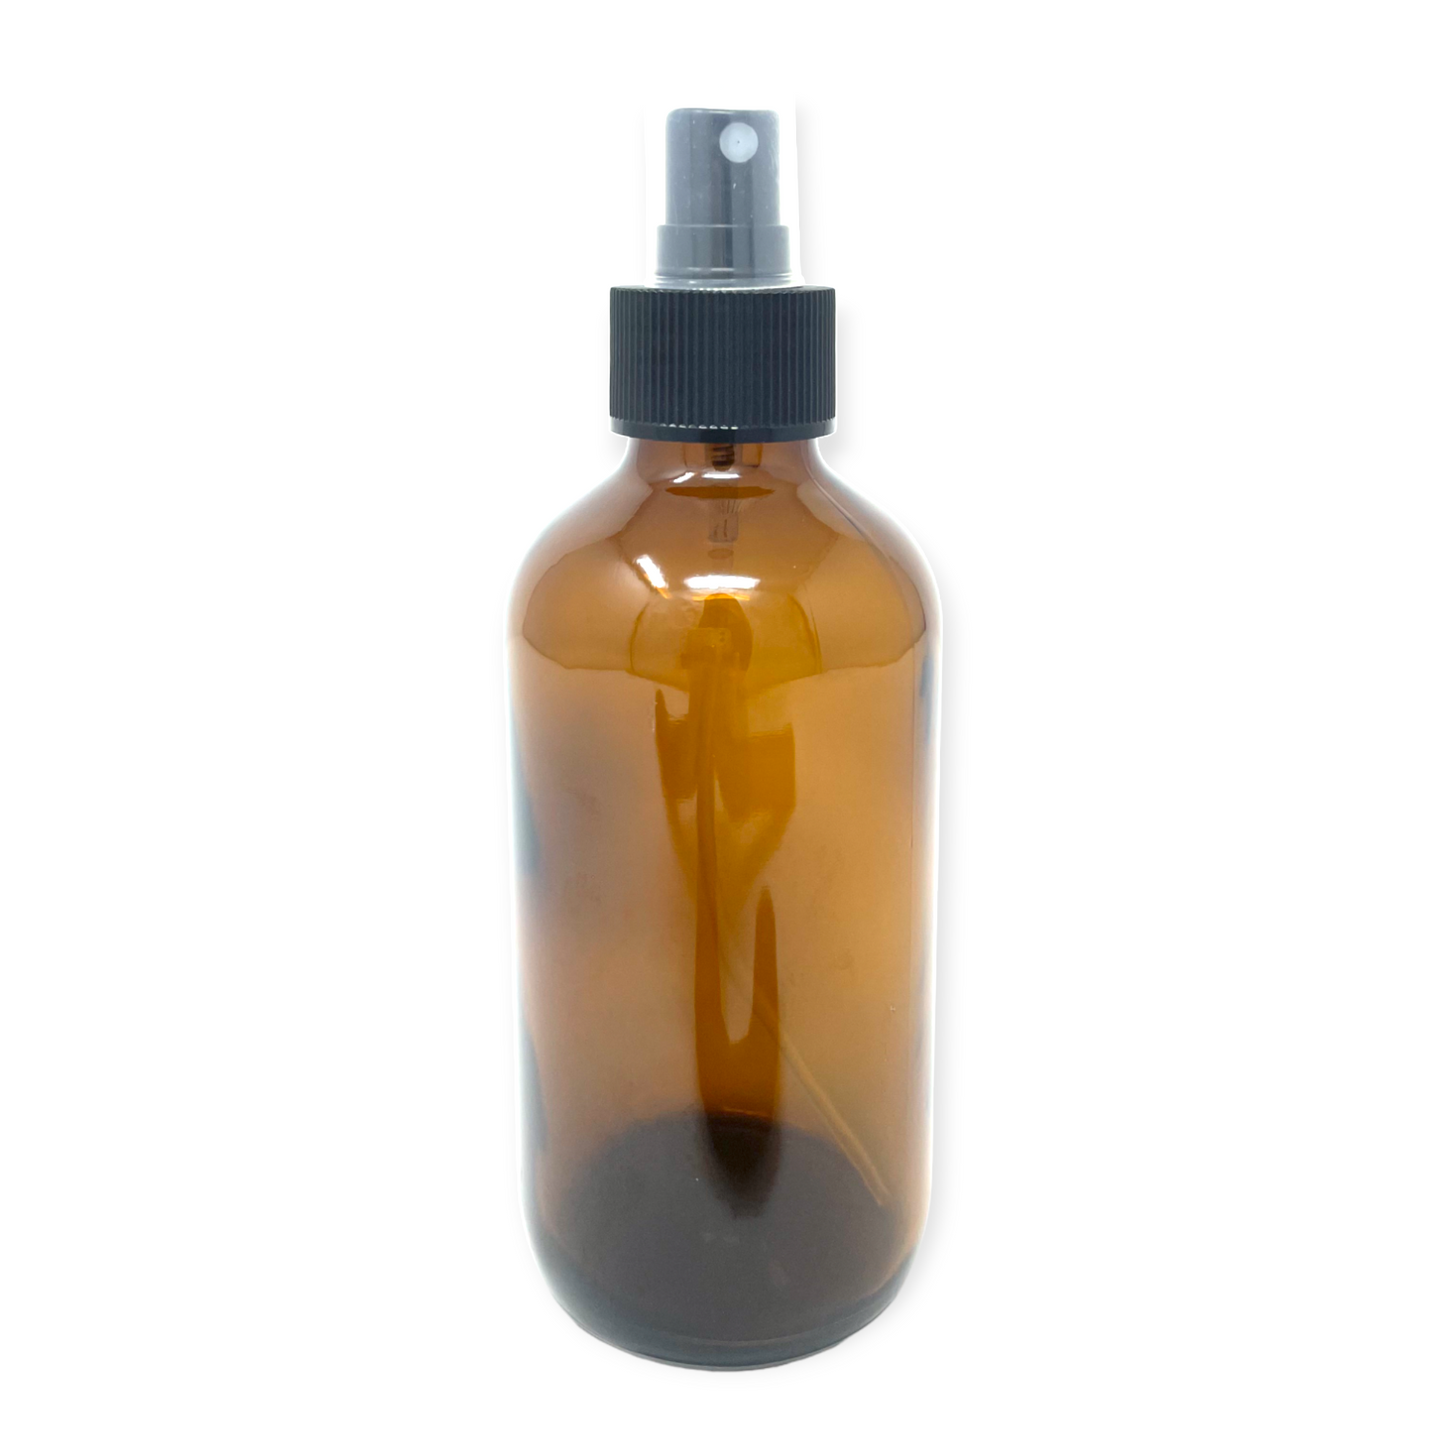 Amber Glass Refill Bottles